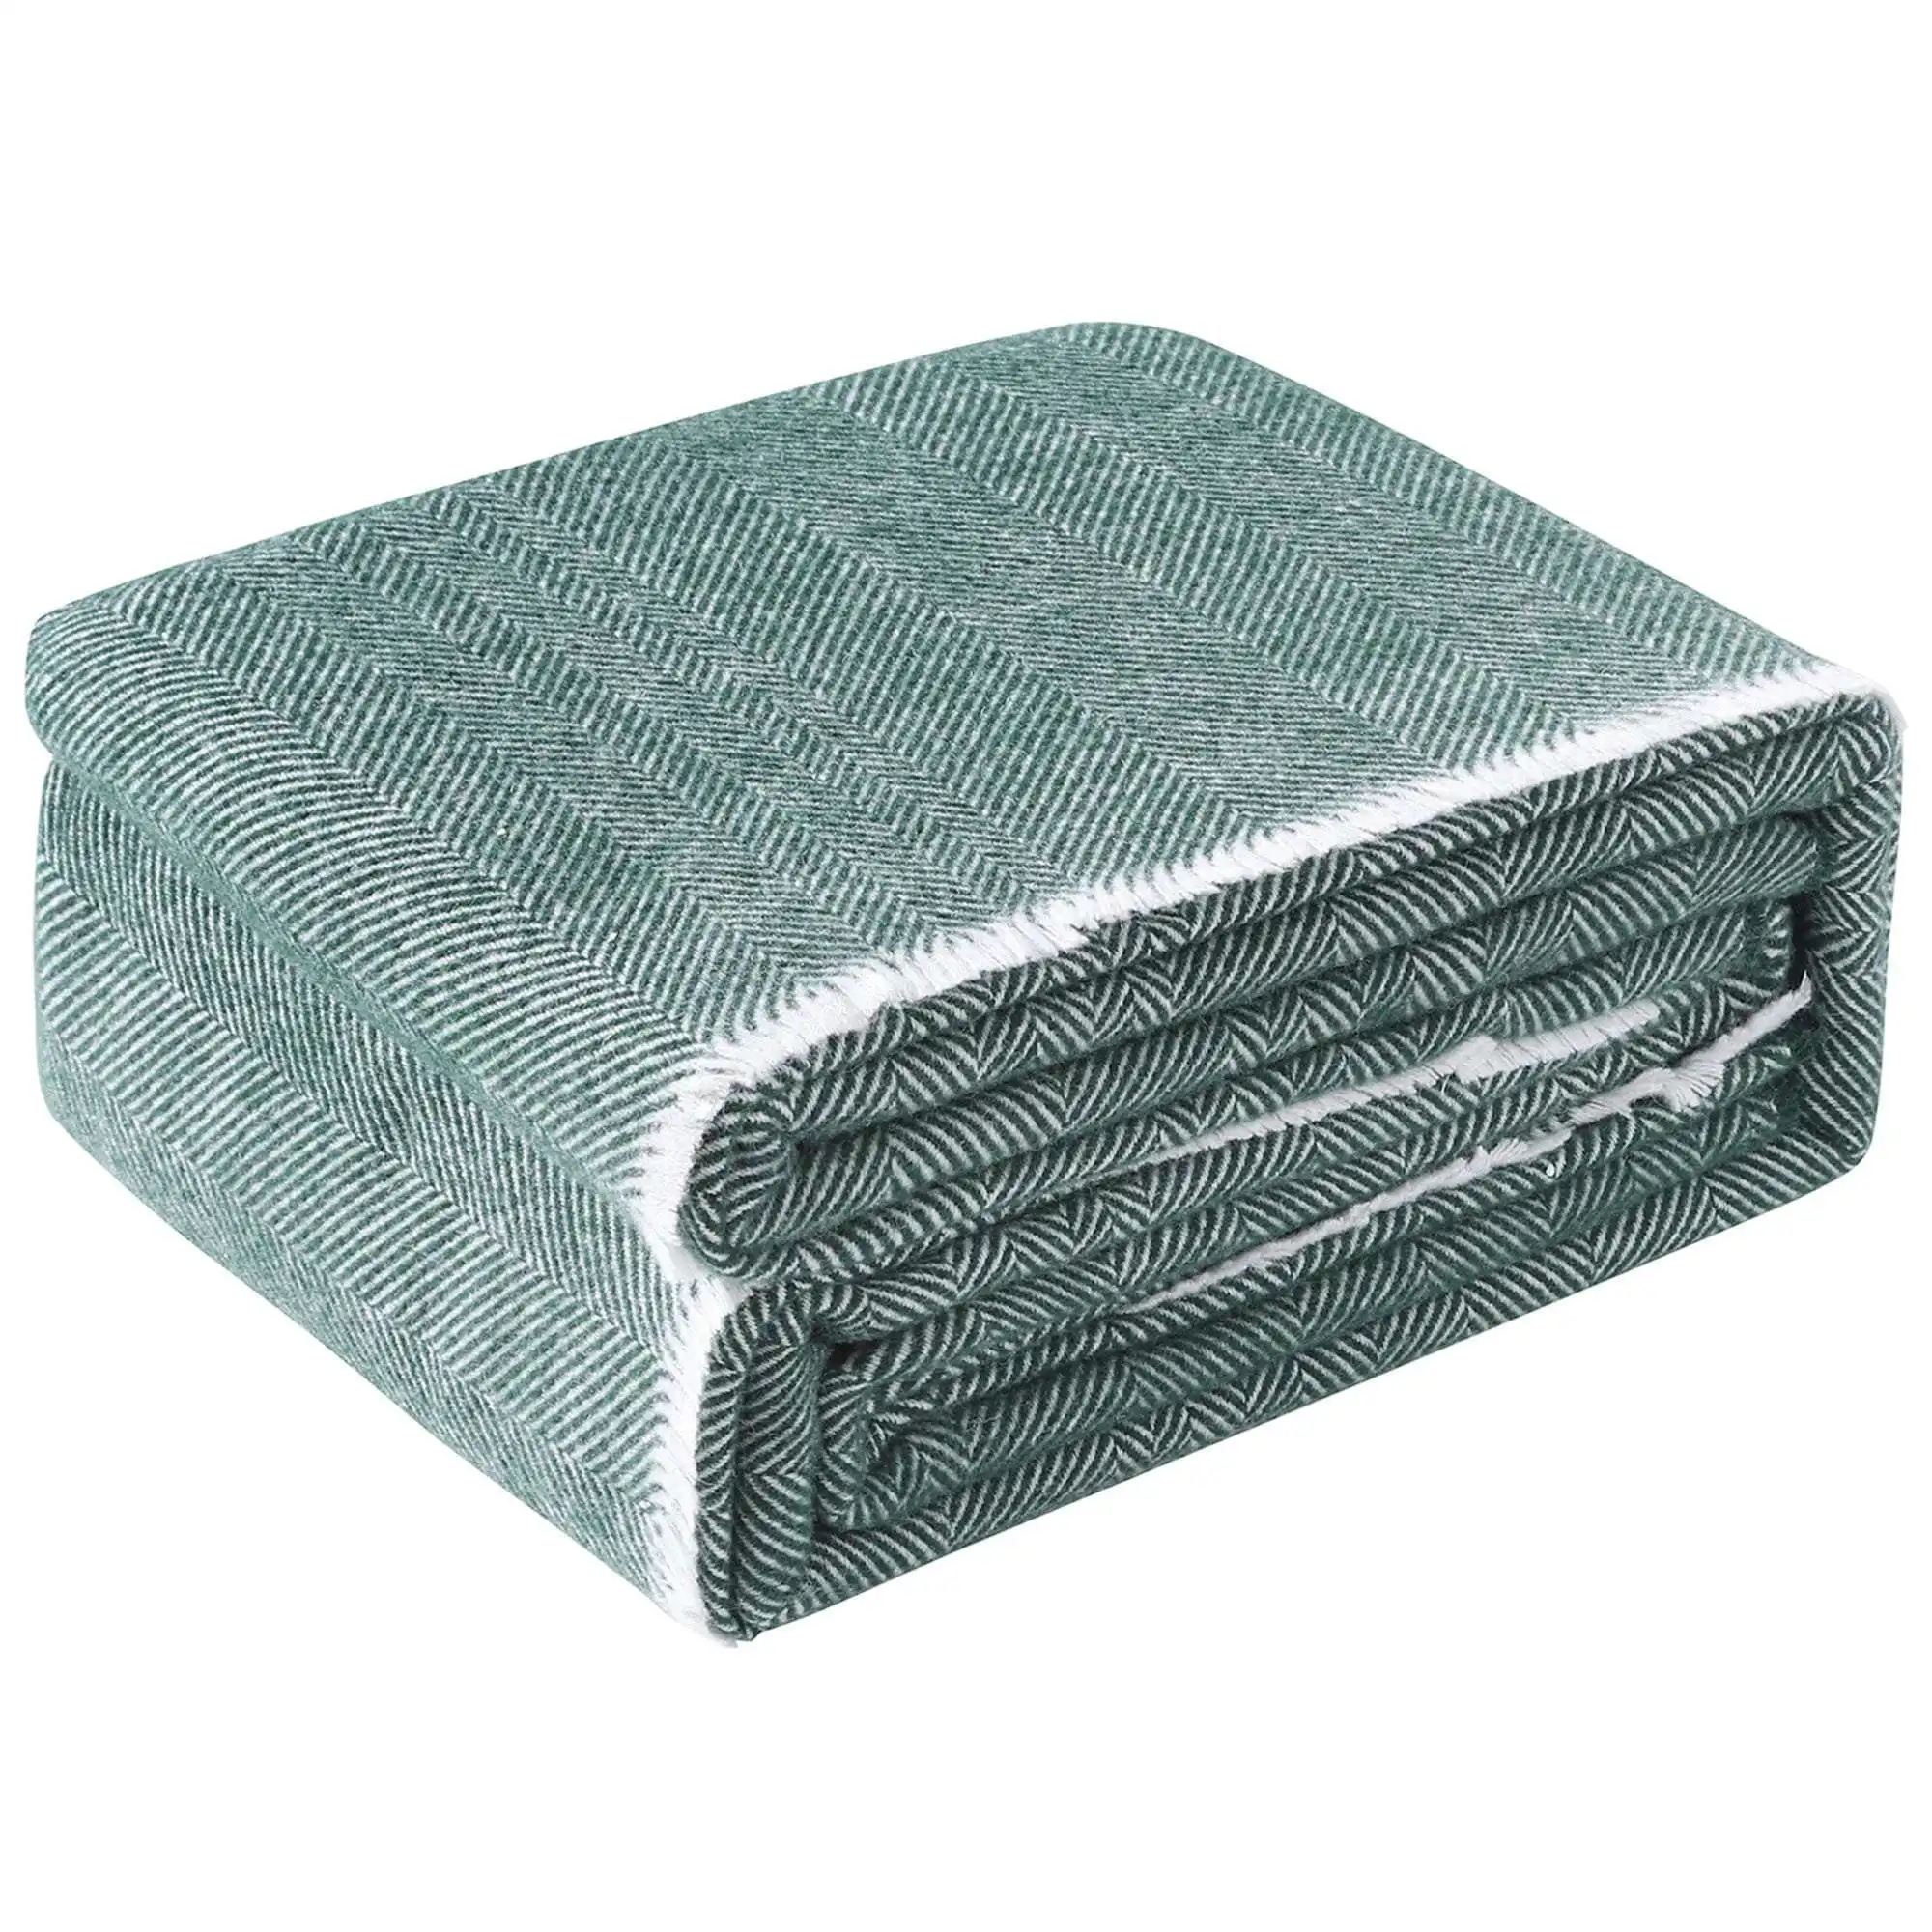 Accessorize Green Herringbone Wool Blanket